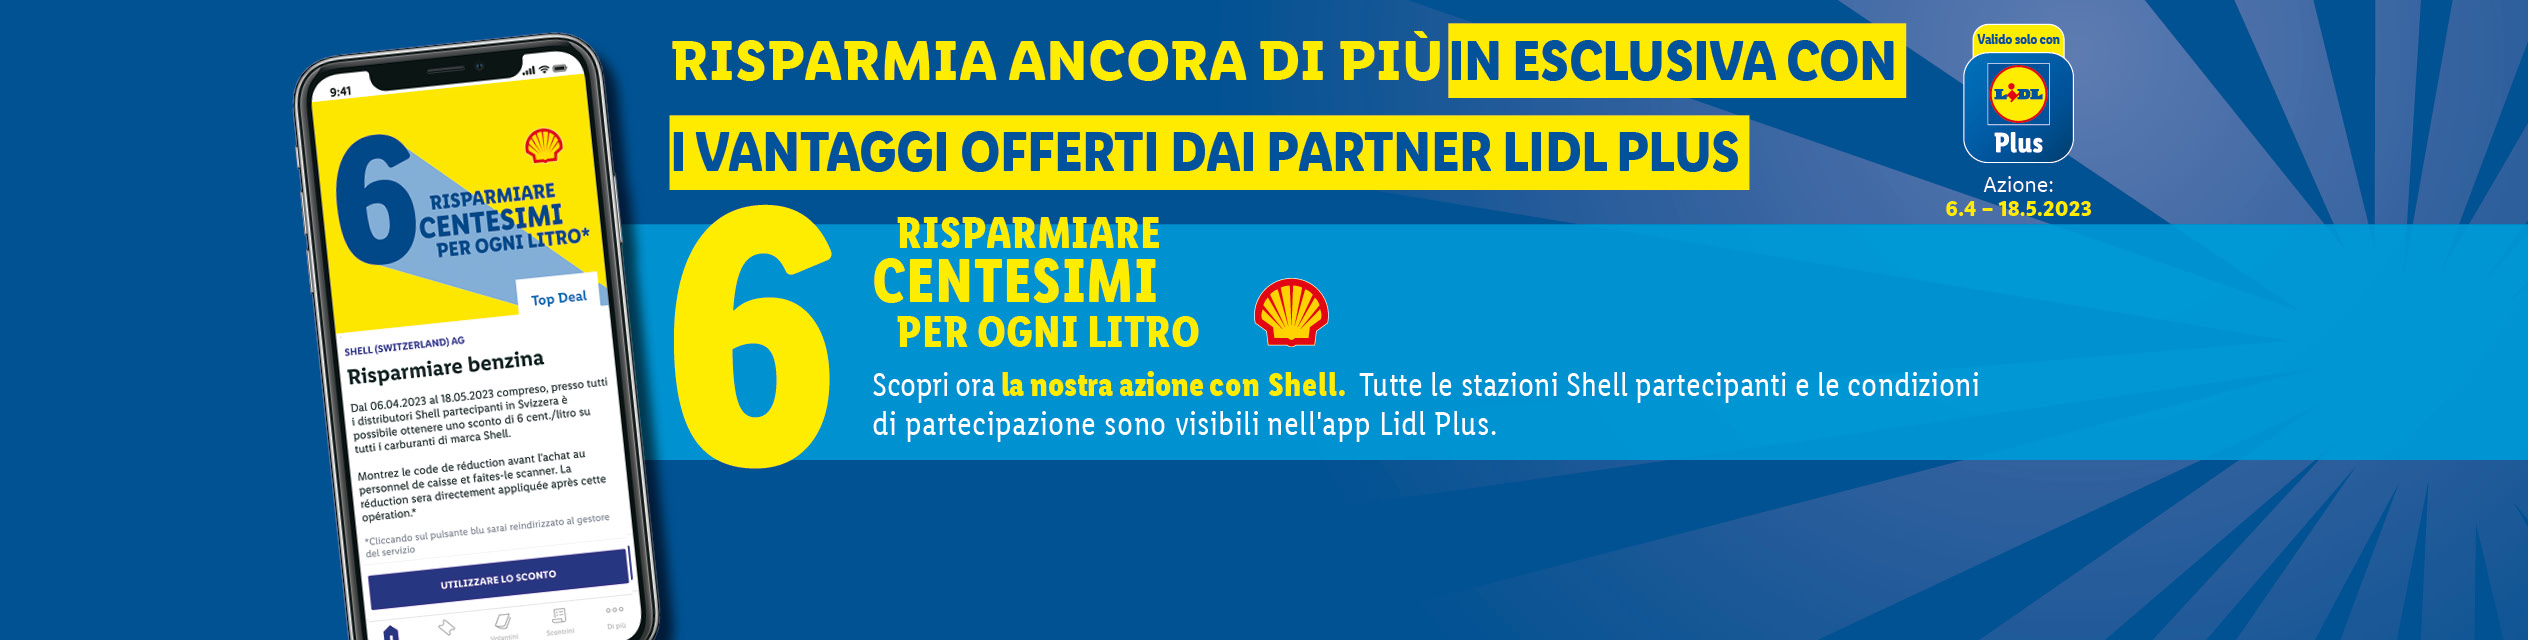 Azione con Shell